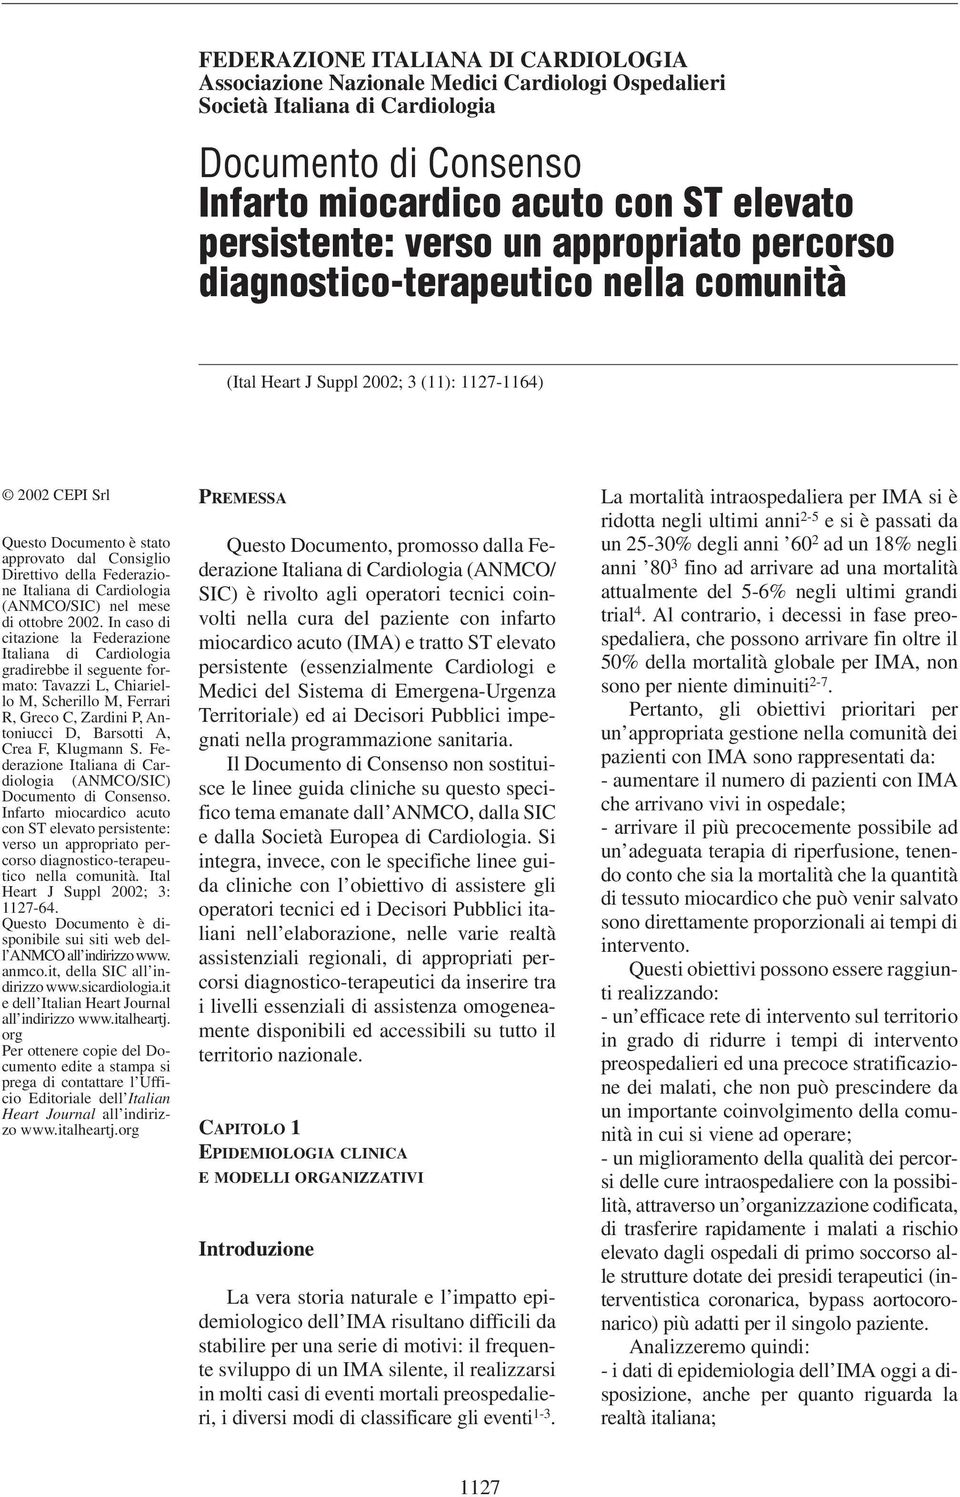 Federazione Italiana di Cardiologia (ANMCO/SIC) nel mese di ottobre 2002.